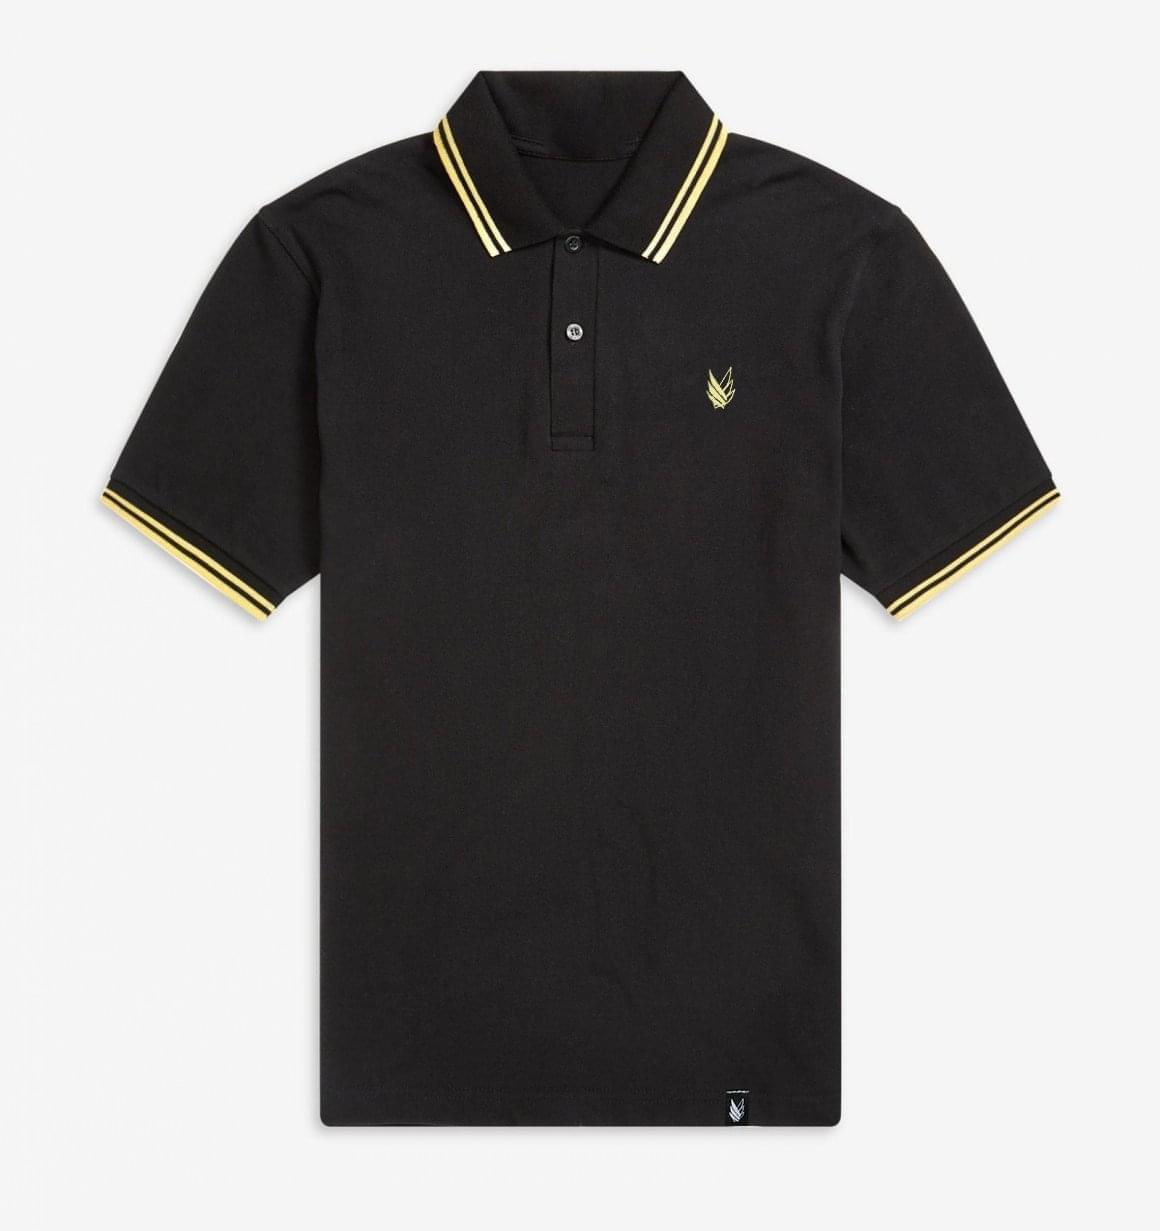 Black & Yellow - Polo Shirt - Stockholm Co. - Playera - basicos, hombre, polo, stkm originals